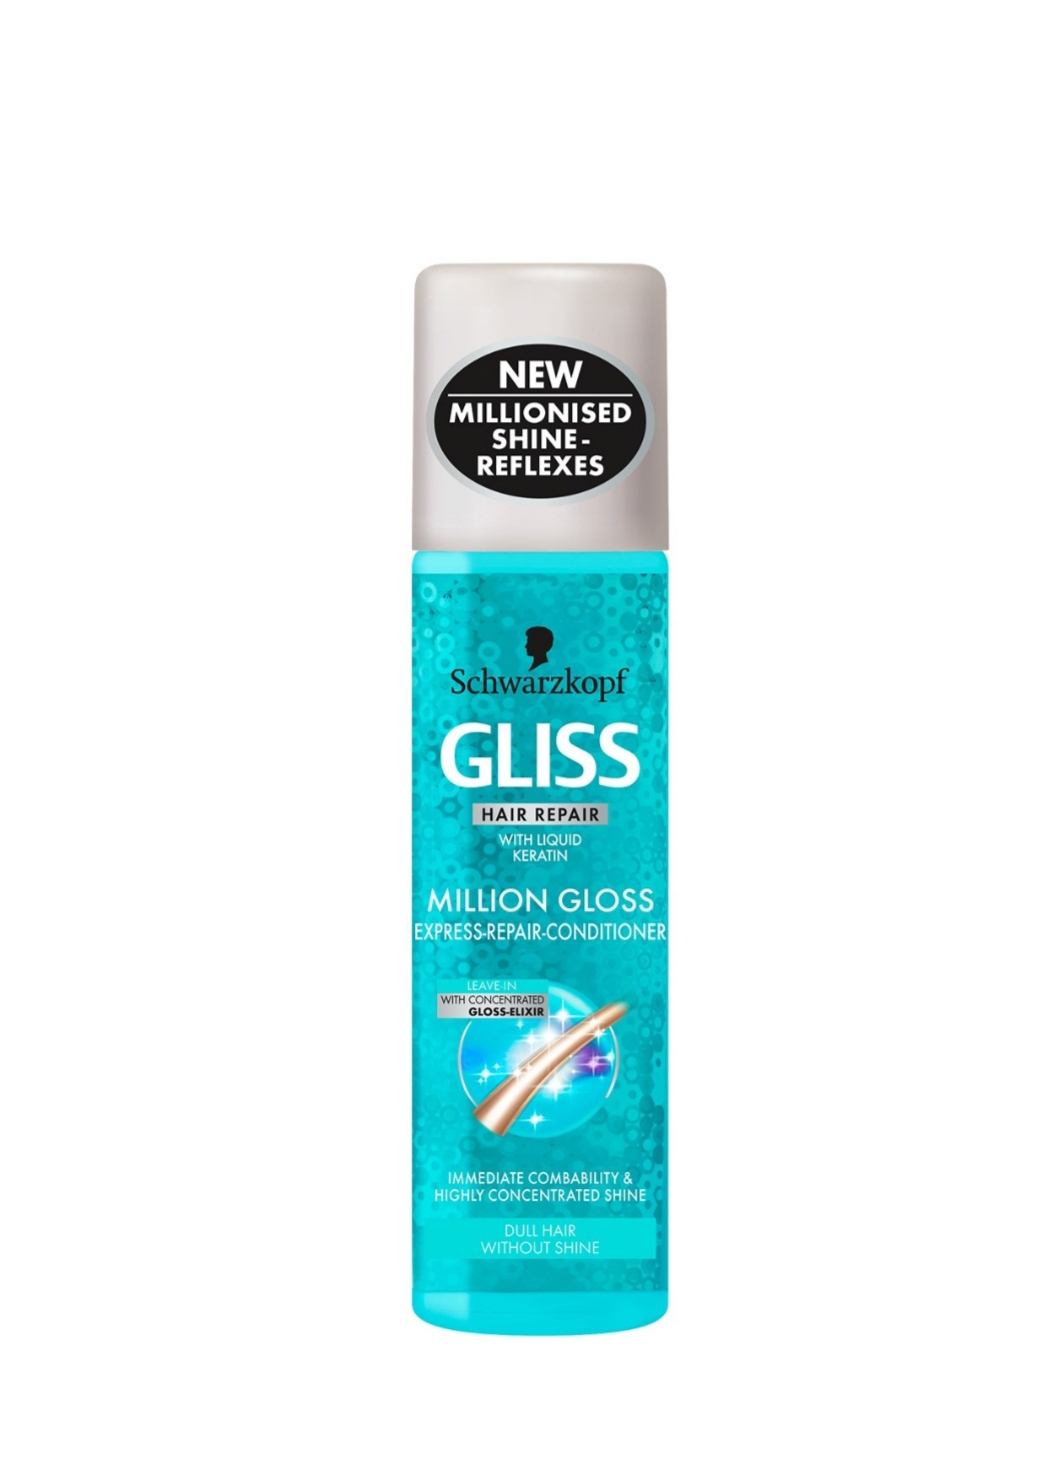 فراورده های حالت دهنده ،نرم کننده وتثبیت کننده آرایش مو (کرمها ، لوسیونها وروغنها) GLISS Million Gloss Express Repair Conditioner